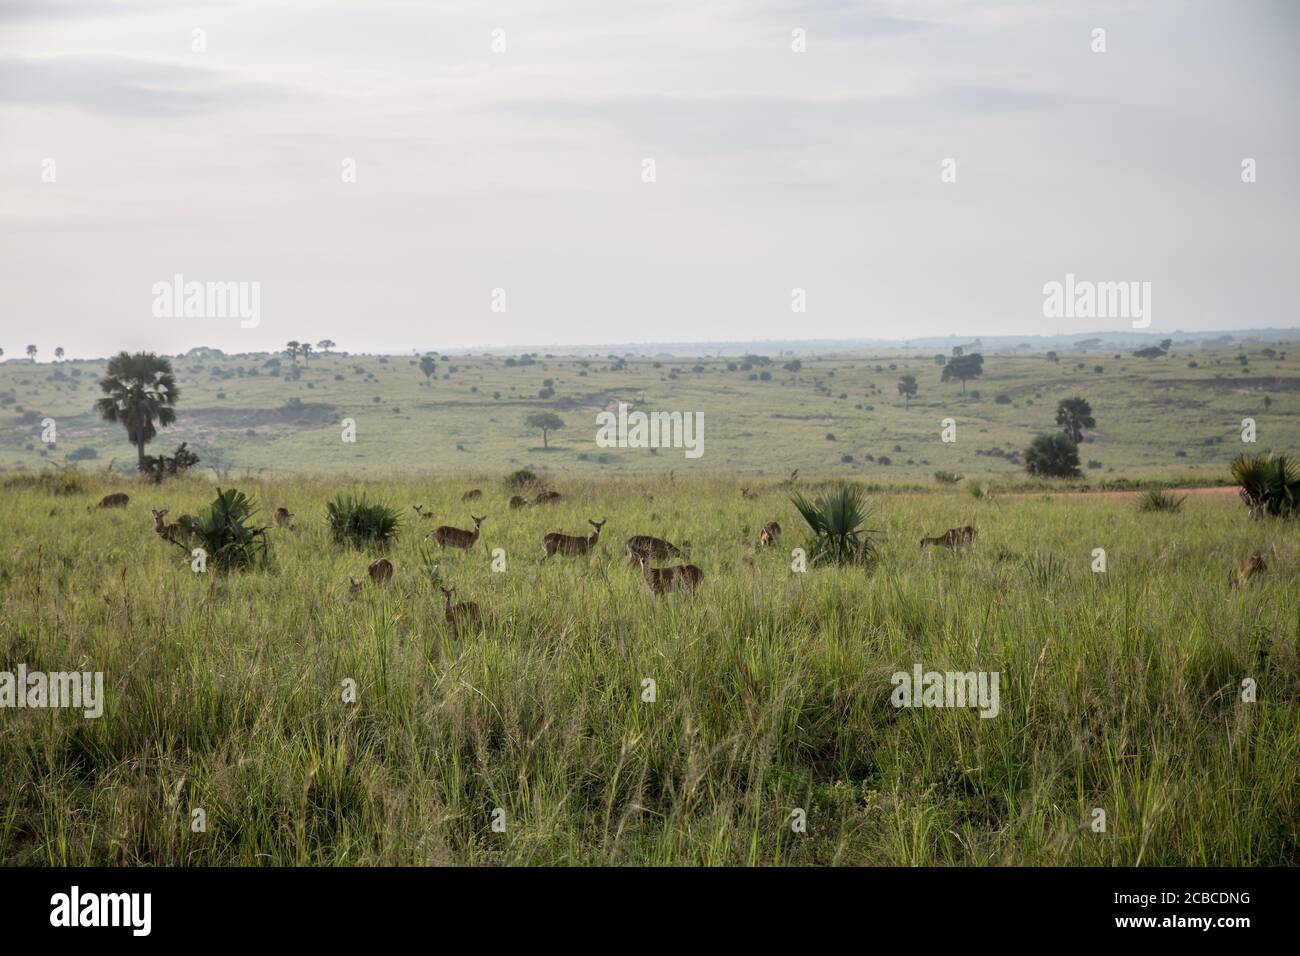 Ugandische Kobs sind an den Murchison Falls, Ugandas größtem Nationalpark, abgebildet. Seit Beginn der Pandemie hat die Wilderei in den Murchison Falls zugenommen, während Uganda in diesem Jahr voraussichtlich mehr als eine Milliarde Dollar im Tourismus verlieren wird. Stockfoto